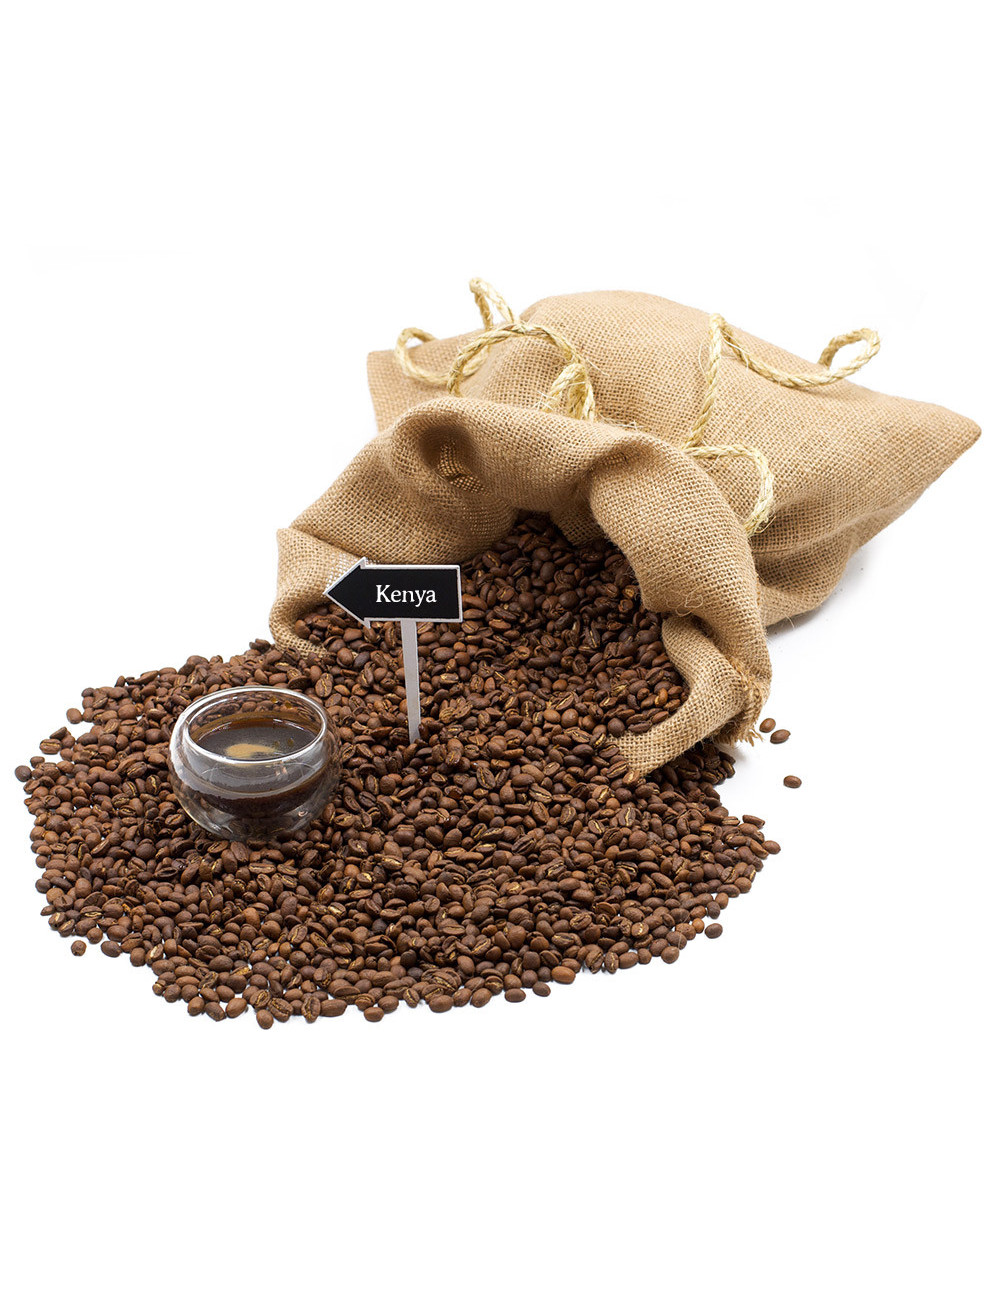 Caffè Kenya monorigine - La Pianta del Tè shop online